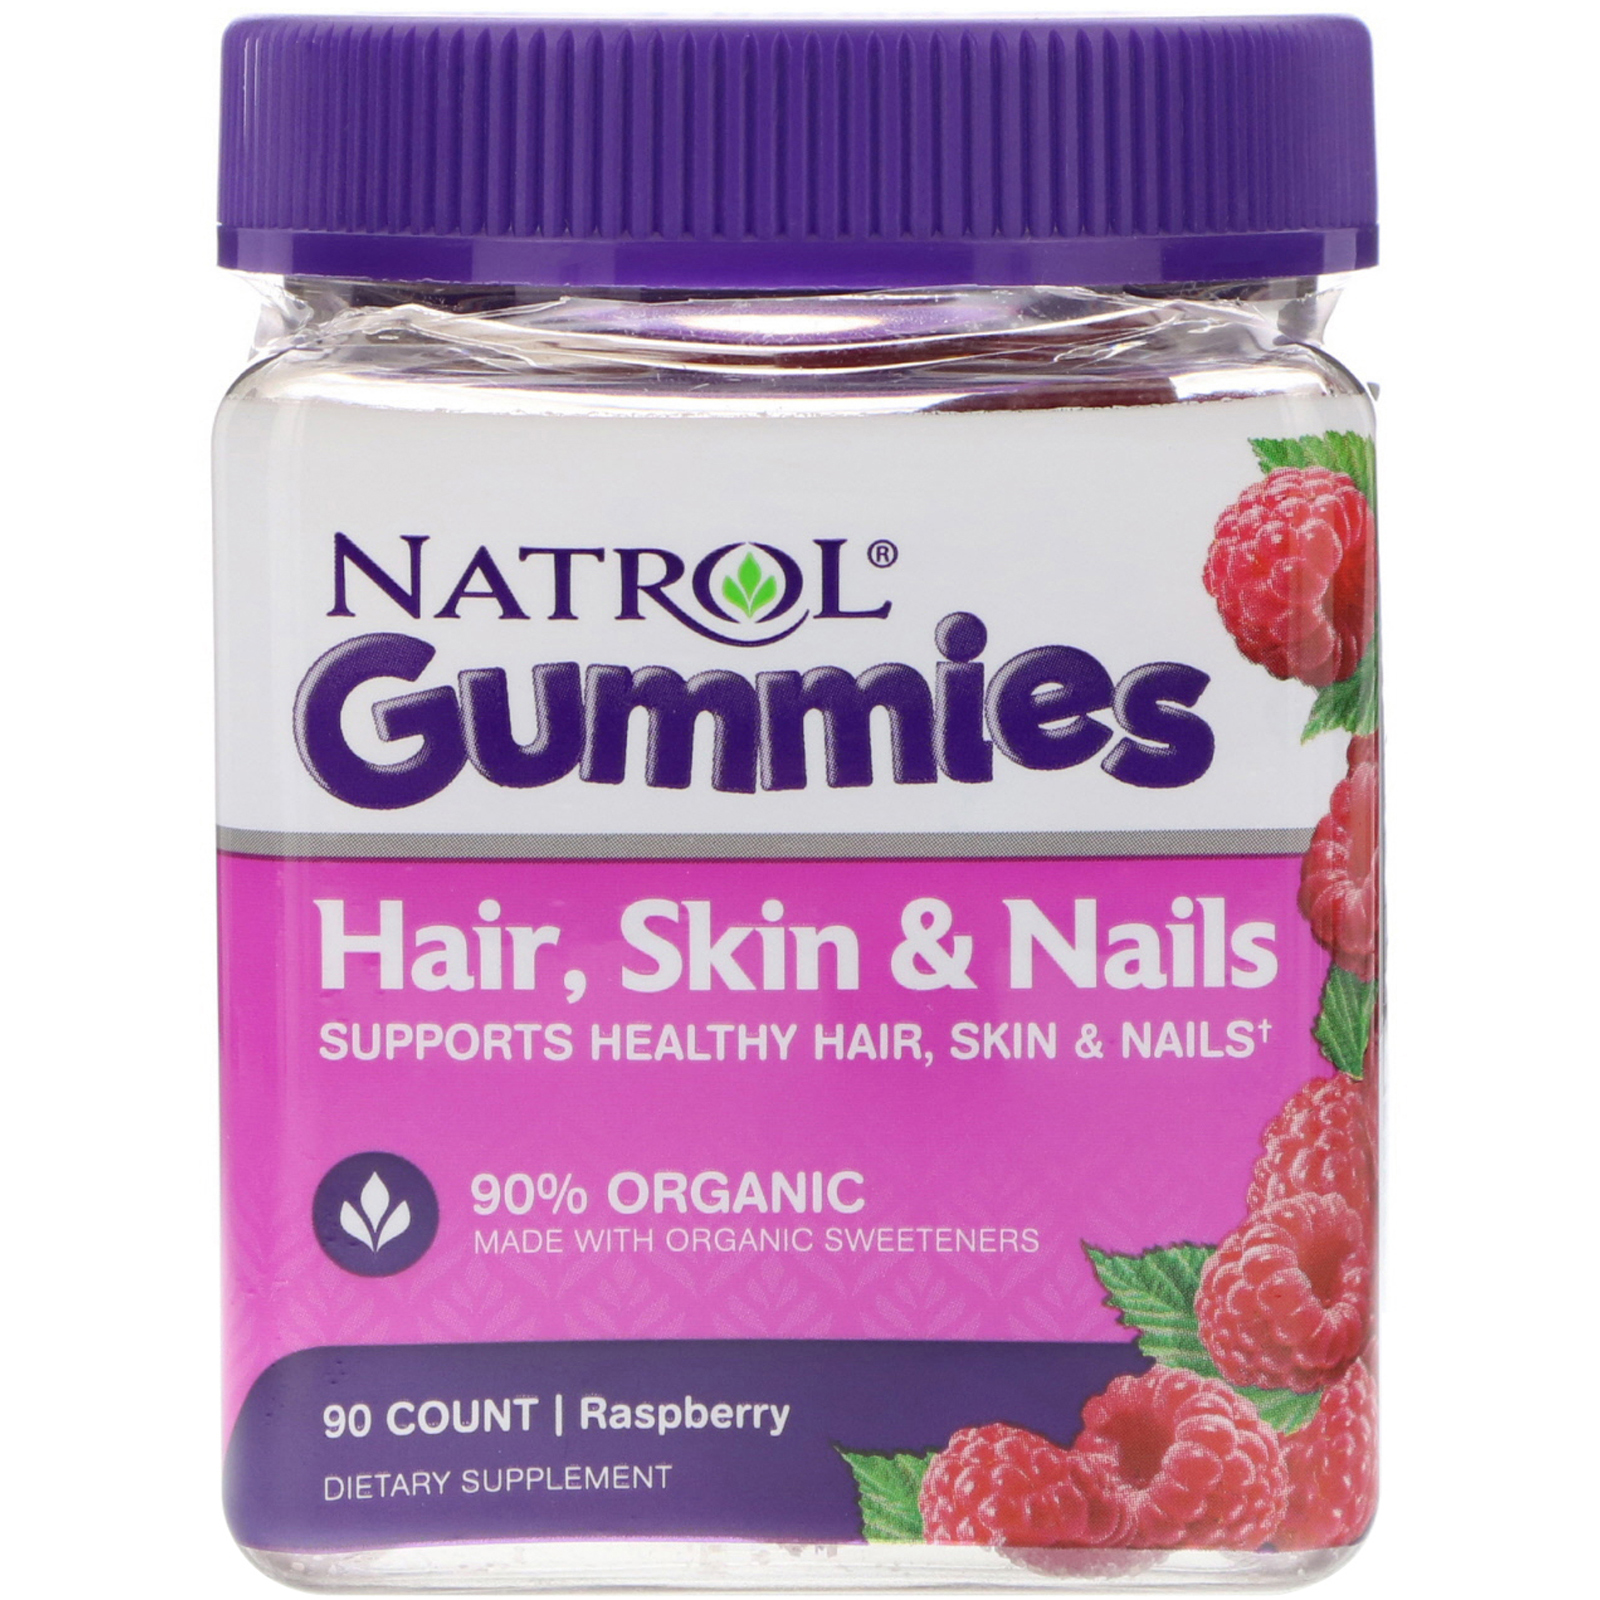 à¸�à¸¥à¸�à¸²à¸£à¸�à¹�à¸�à¸«à¸²à¸£à¸¹à¸�à¸�à¸²à¸�à¸ªà¸³à¸«à¸£à¸±à¸� Natrol Gummies Hair Skin & Nails 90 Count